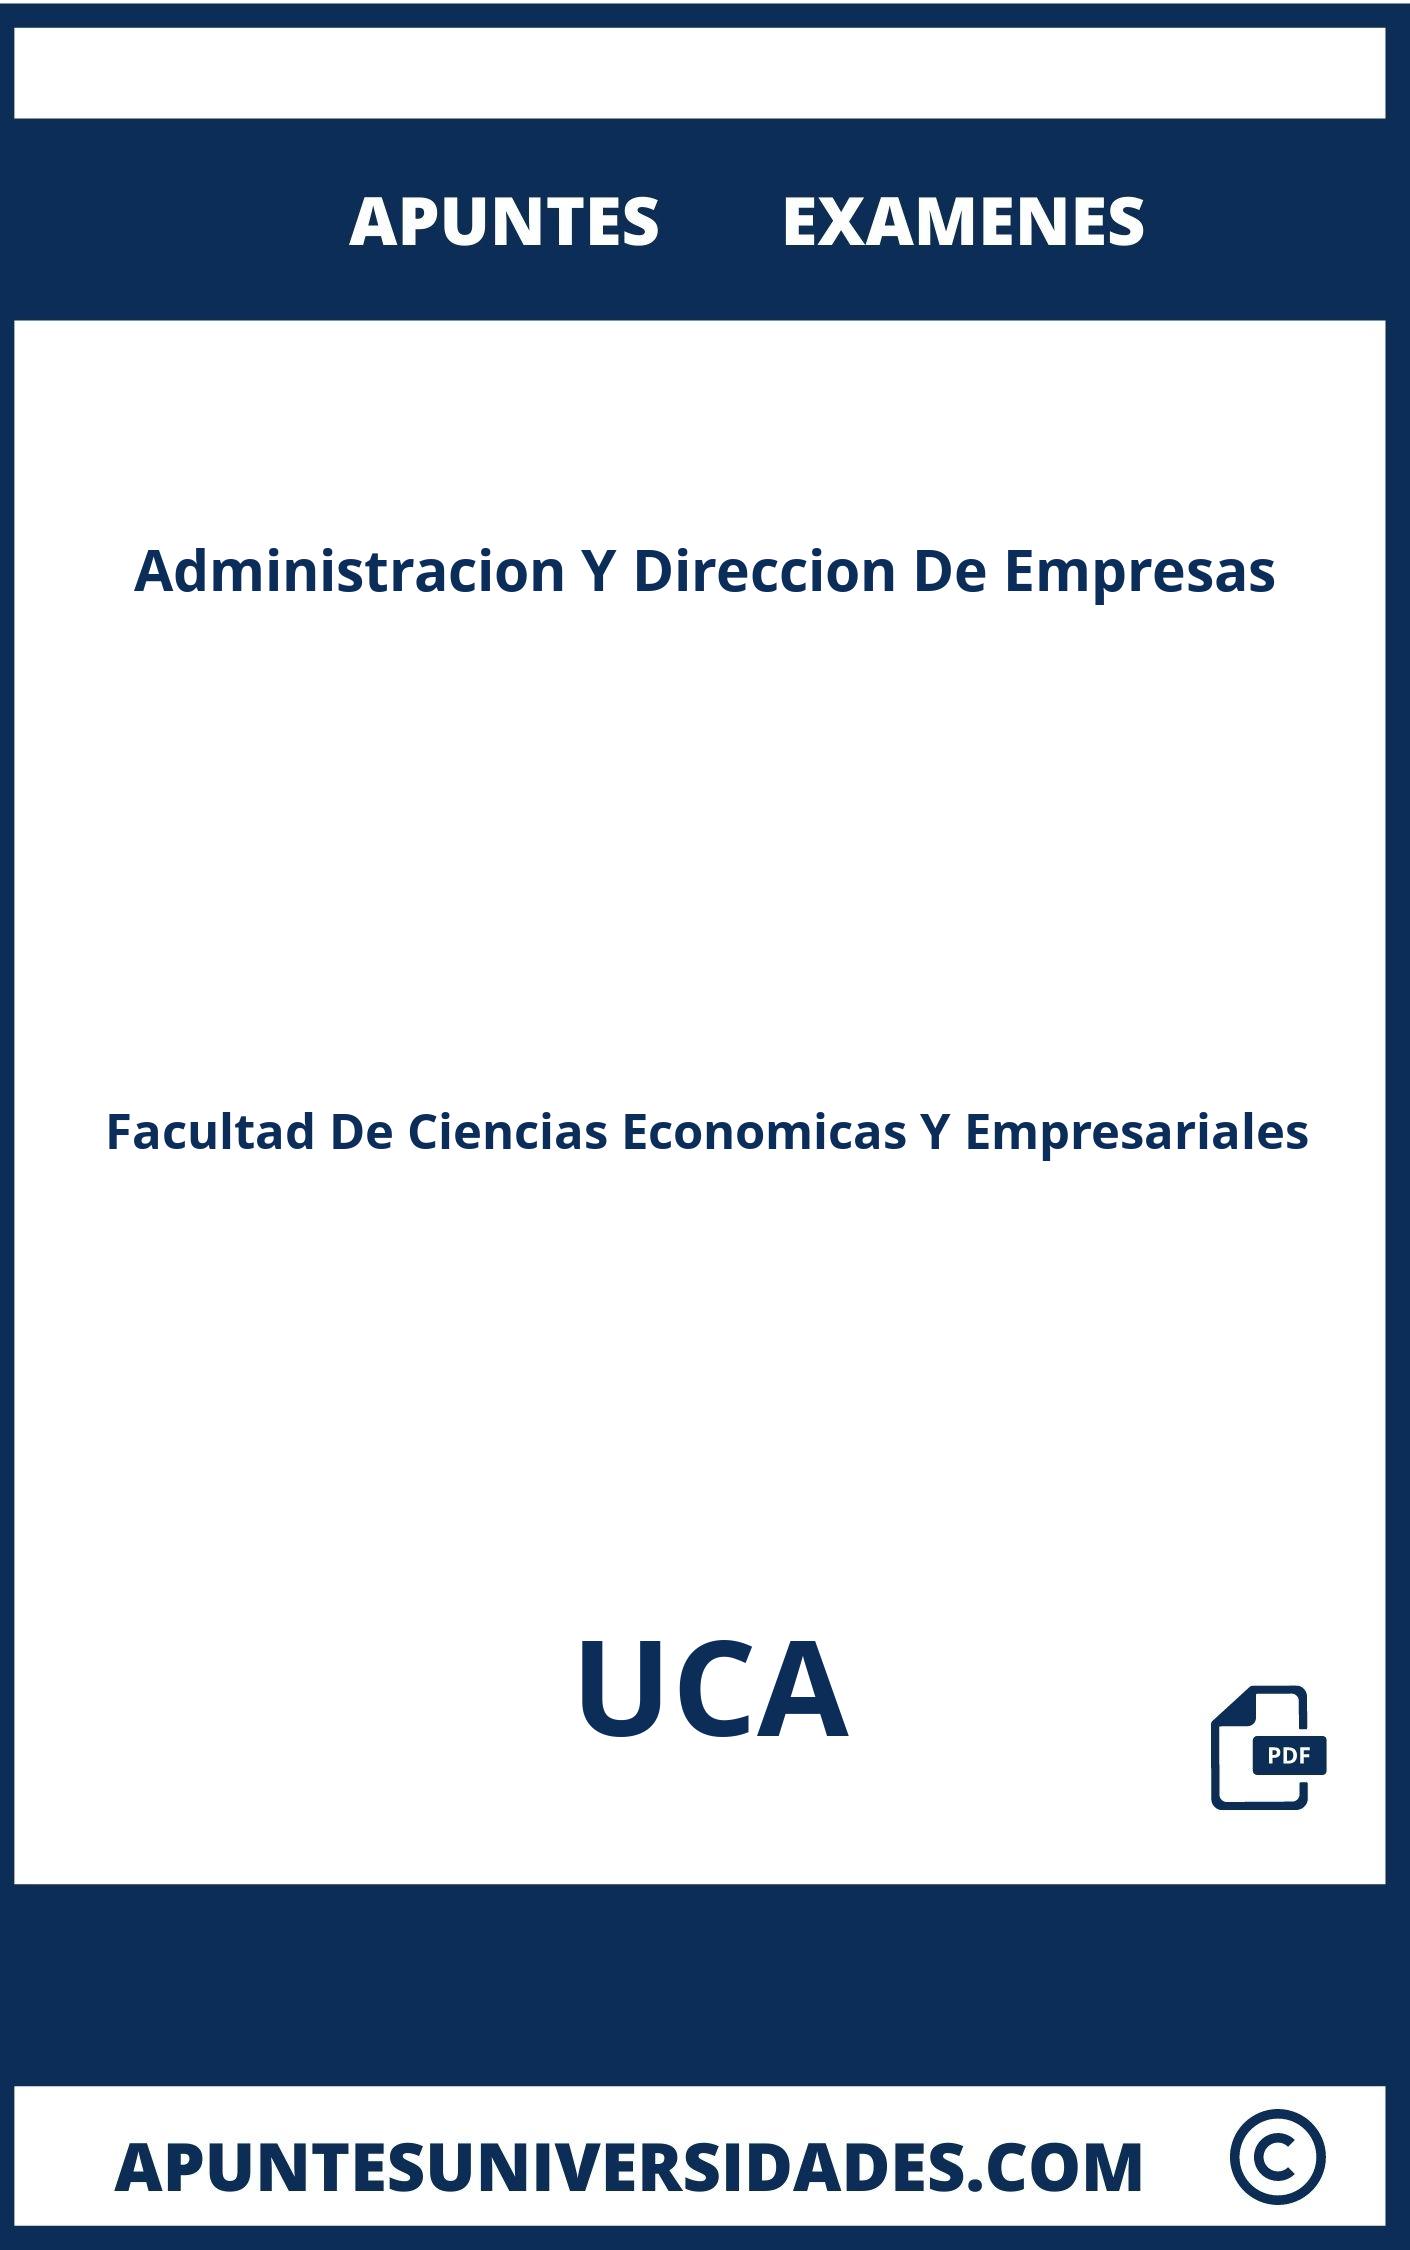 Examenes Apuntes Administracion Y Direccion De Empresas UCA